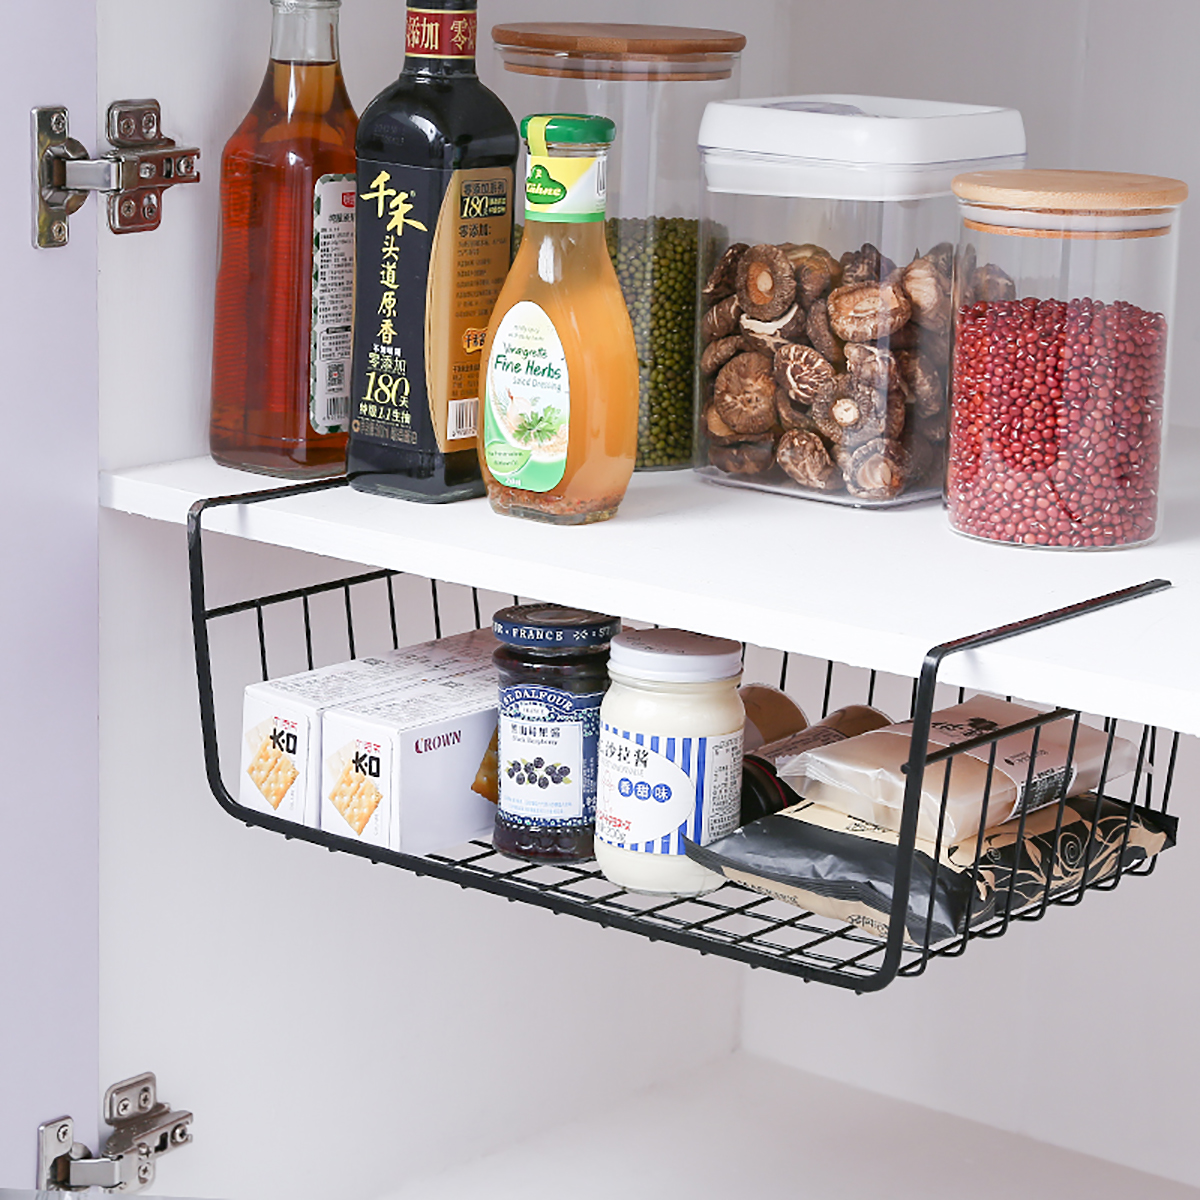 Under-Shelf-Storage-Hanging-Rack-Kitchen-Holder-Basket-Table-Cabinet-Organizer-1703470-11